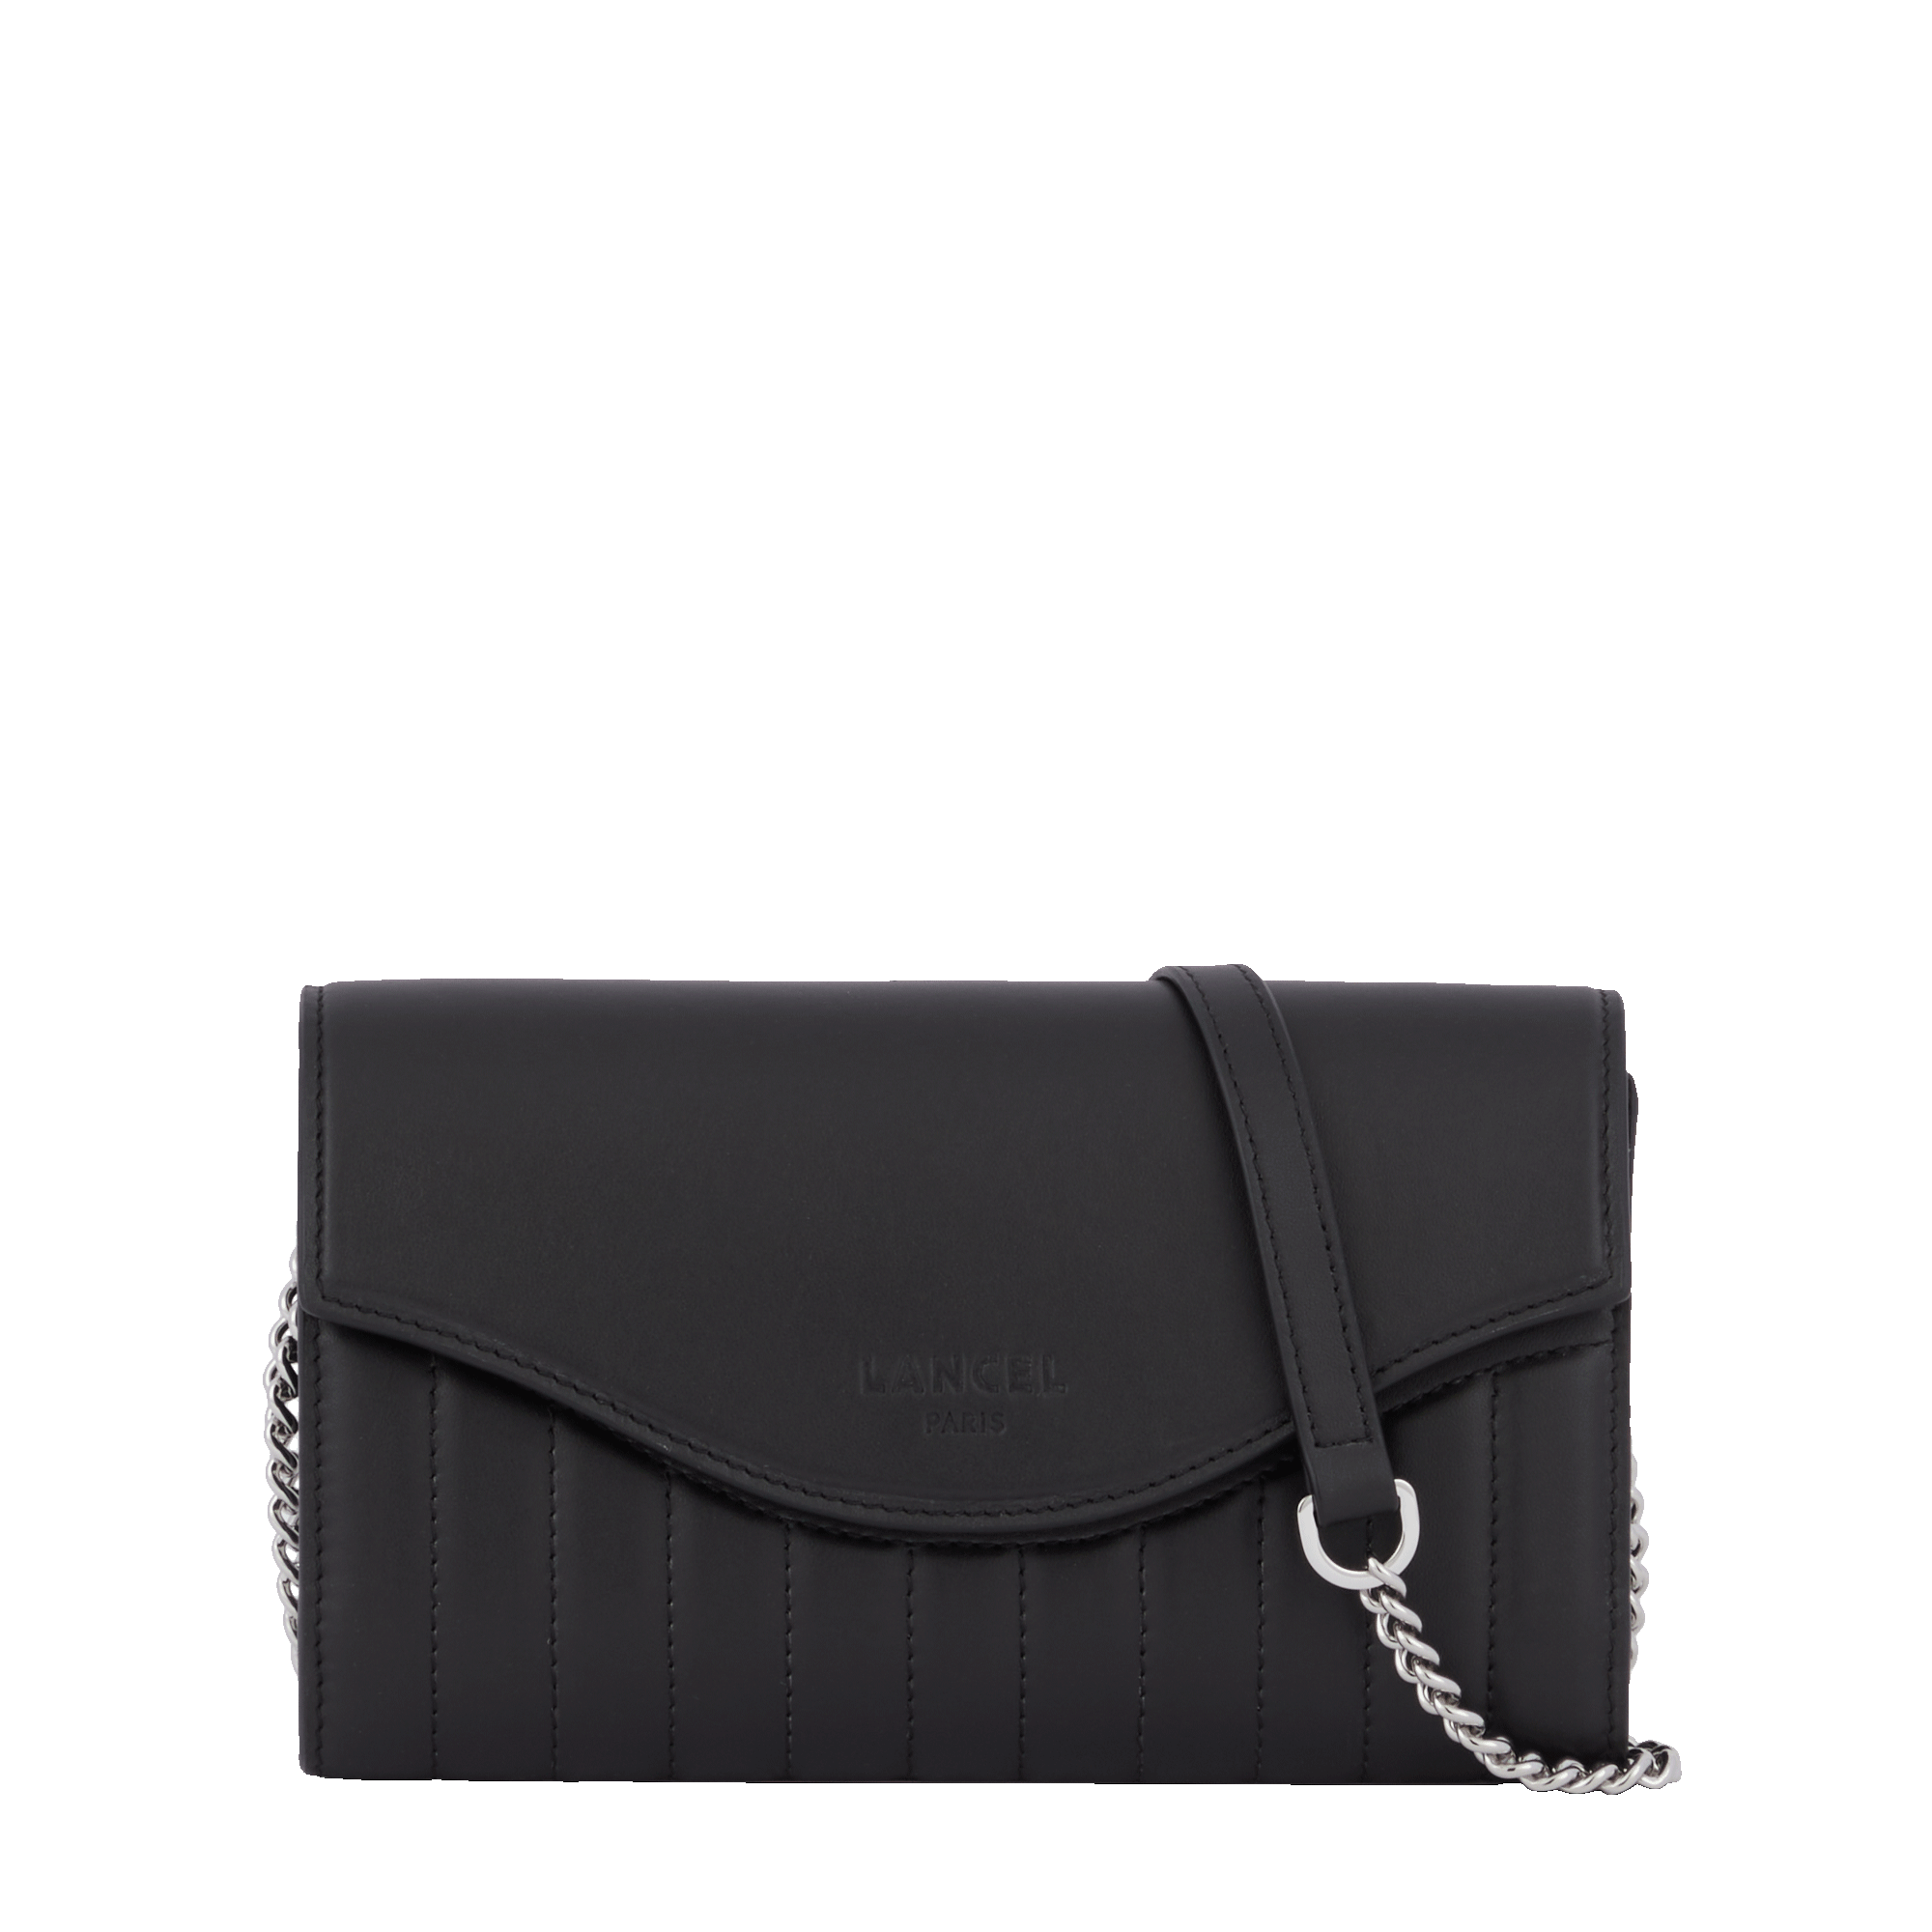 Chain wallet – Lancel